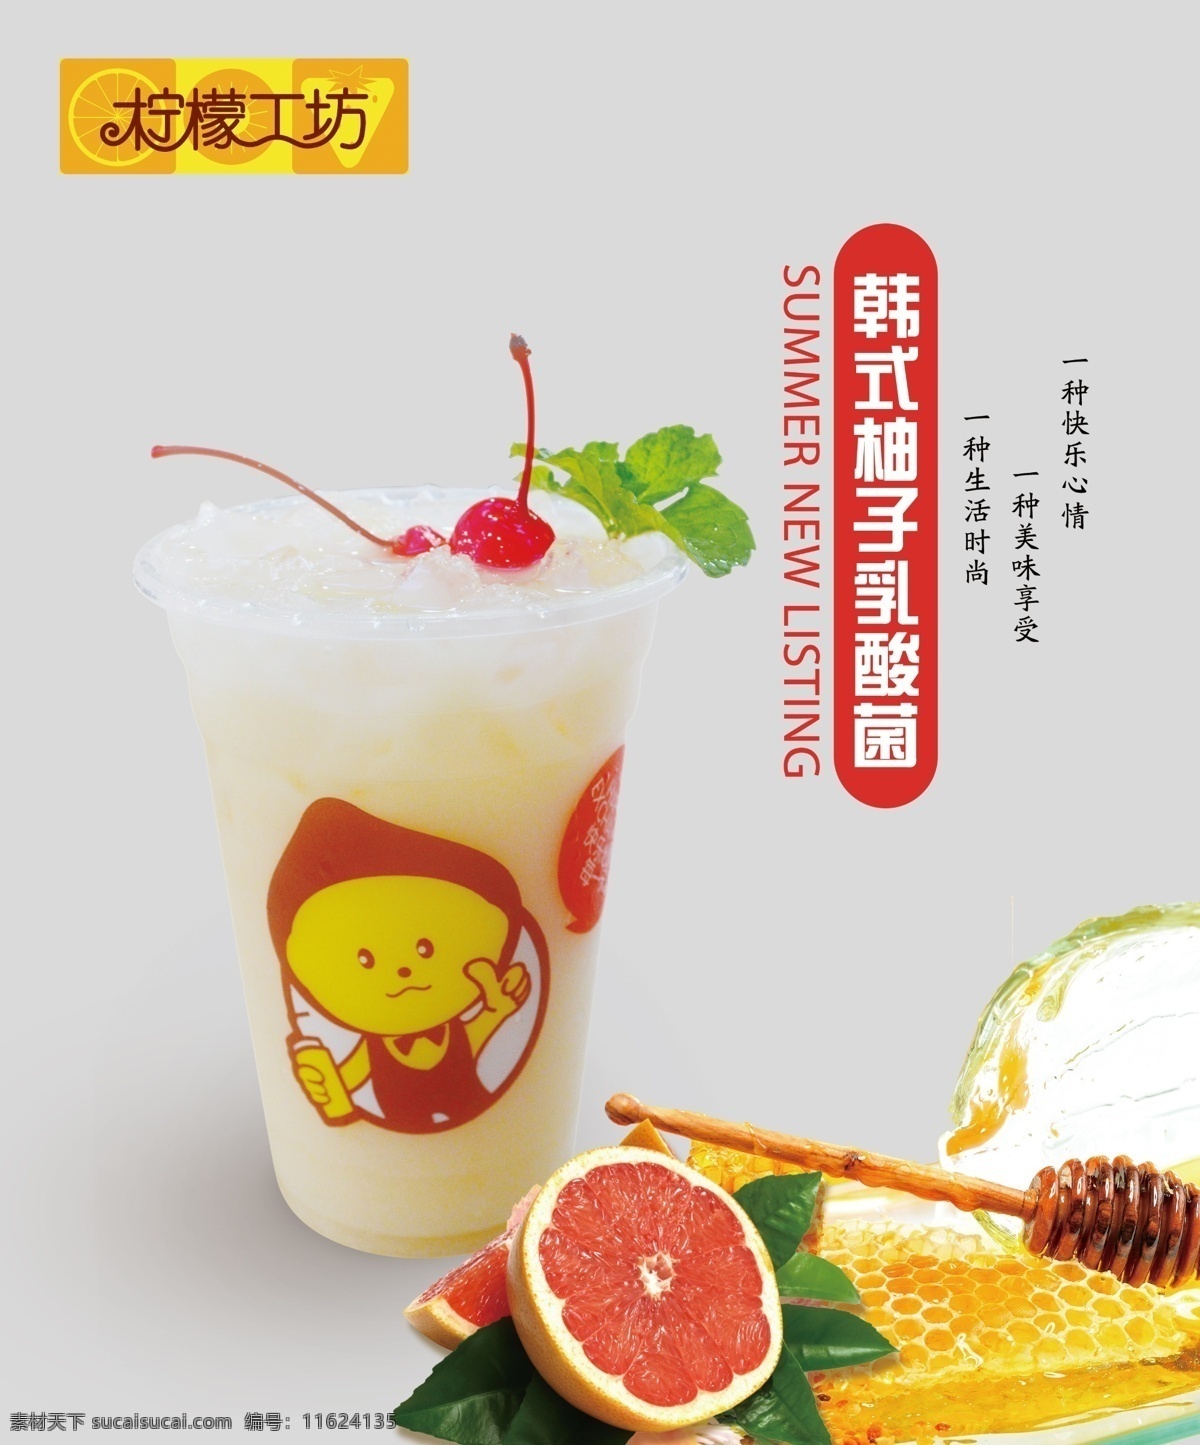 柚子 乳酸菌 饮料 奶茶 柚子饮料灯箱 乳酸菌设计 冰凉可口饮料 柠檬工坊 柚子奶茶海报 分层